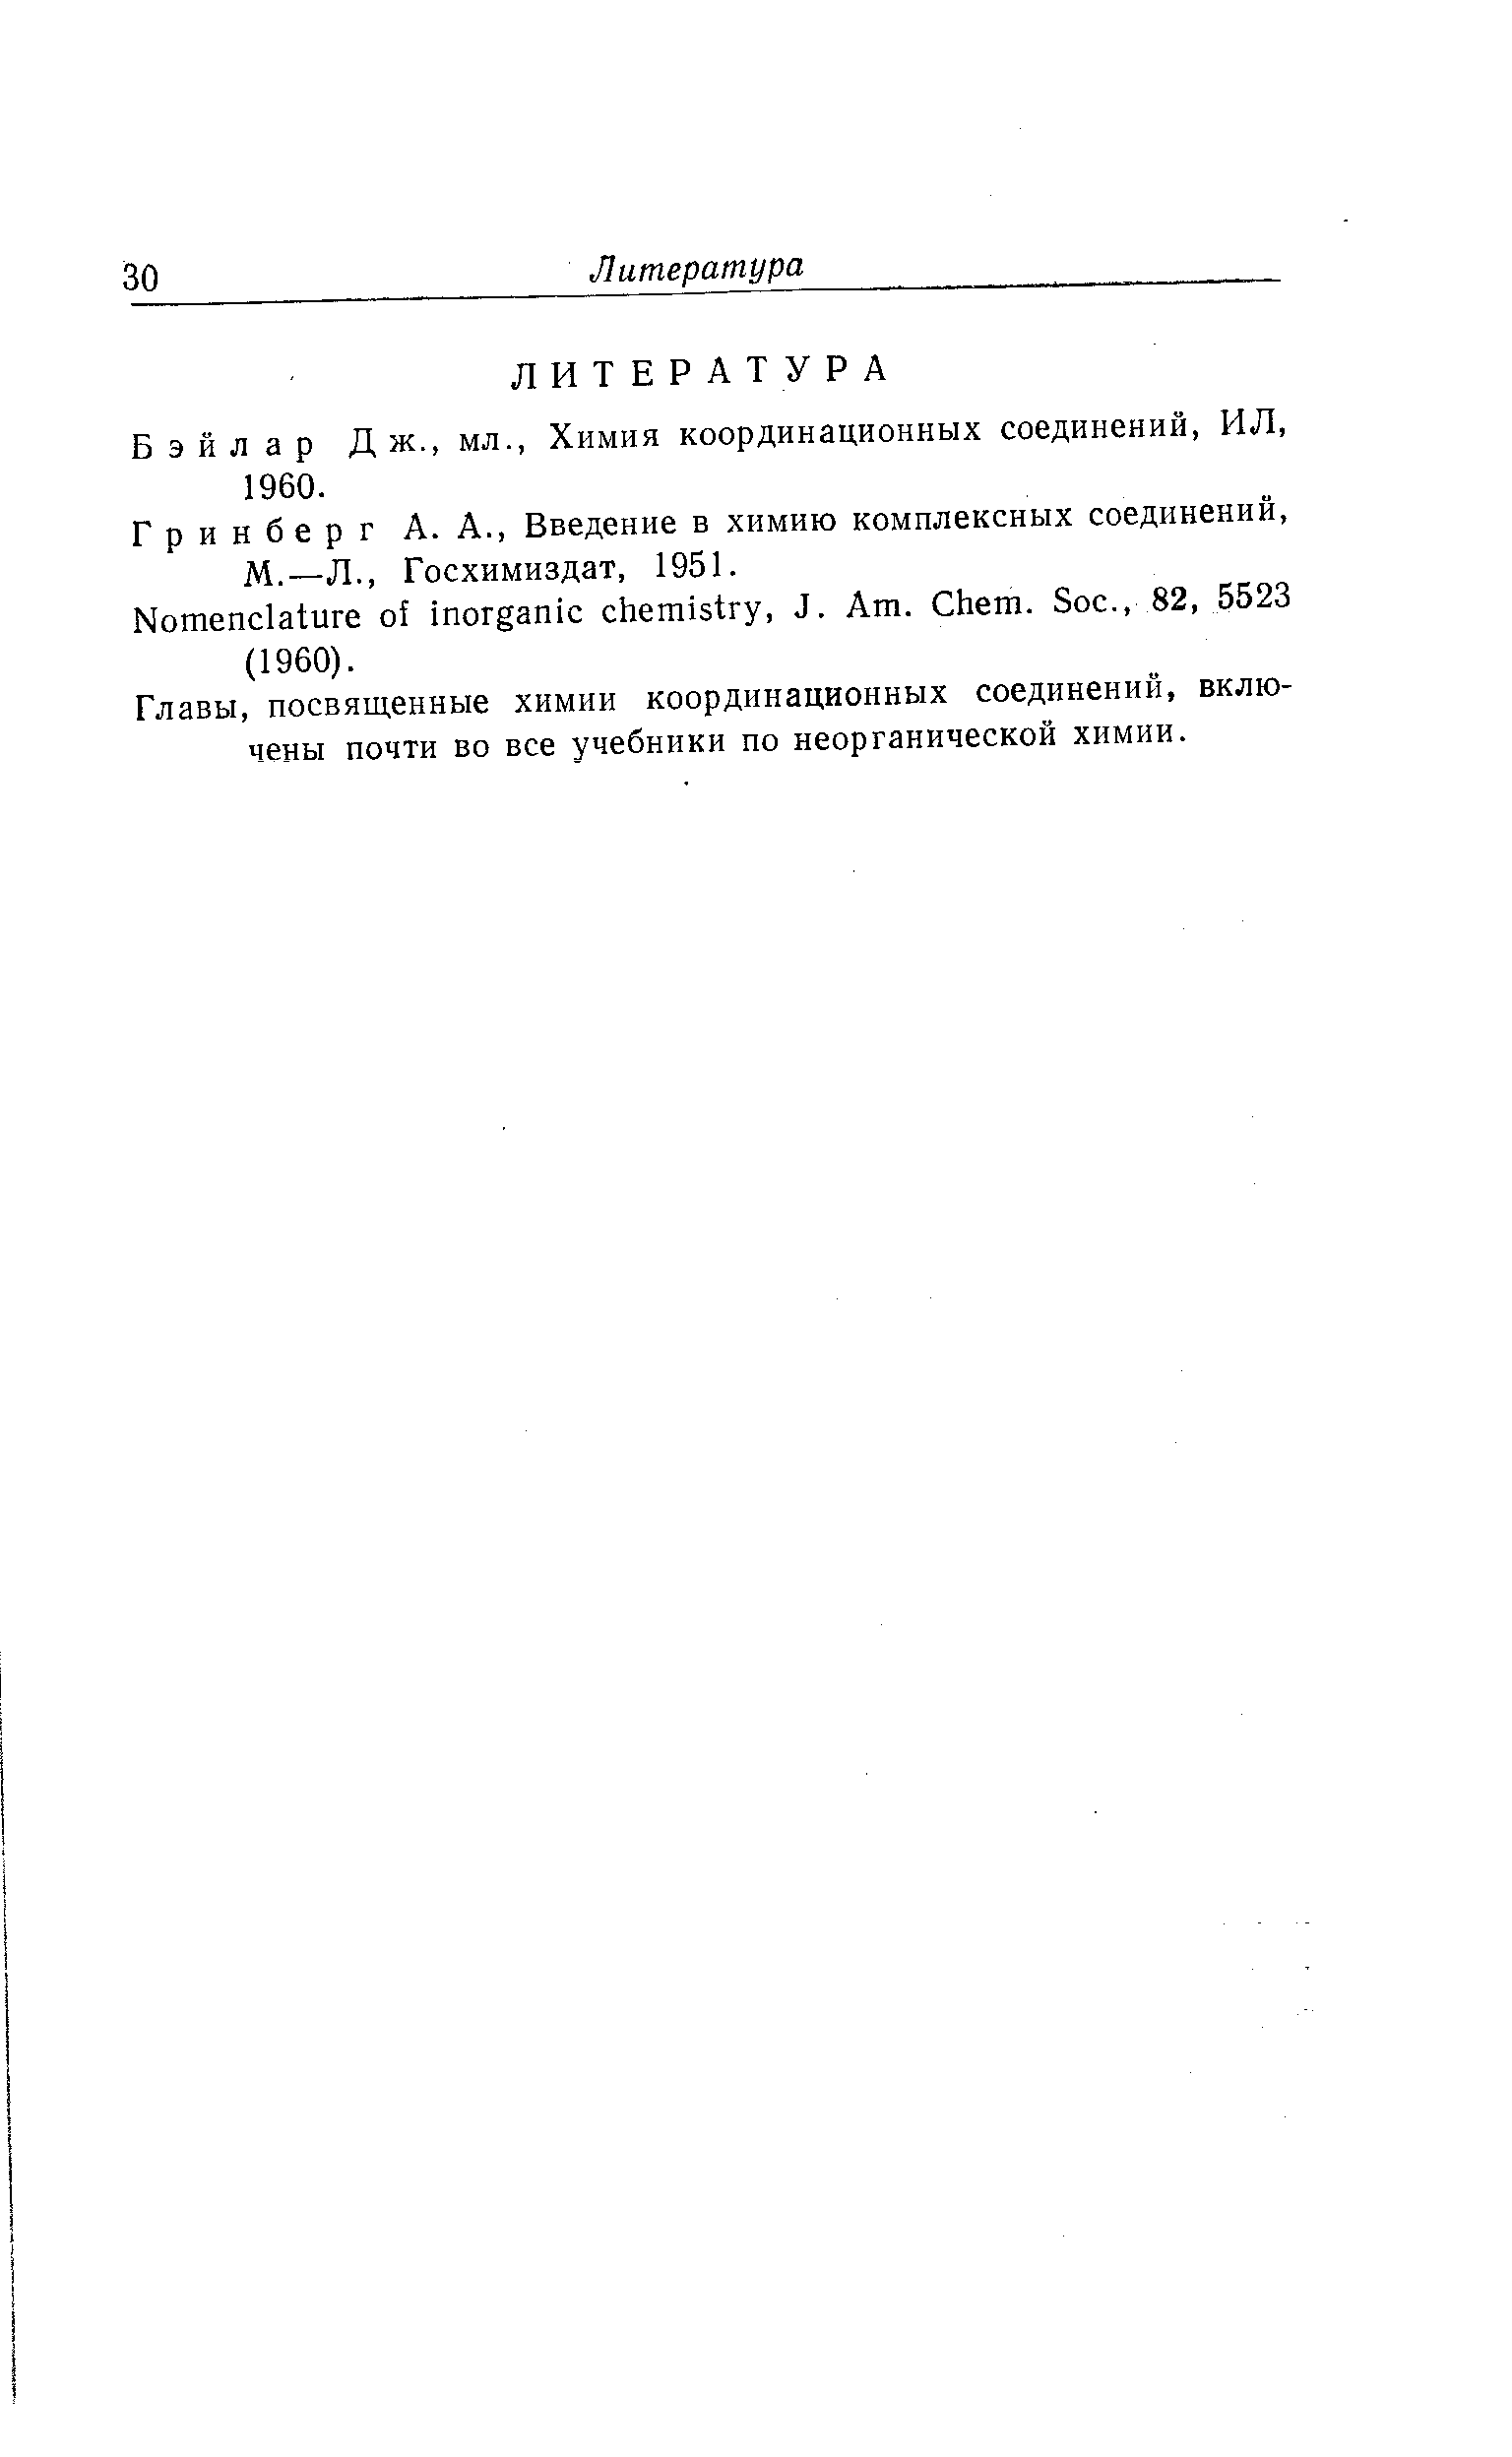 Б э й л а р Д ж., мл., Химия координационных соединений, ИЛ, 1960.